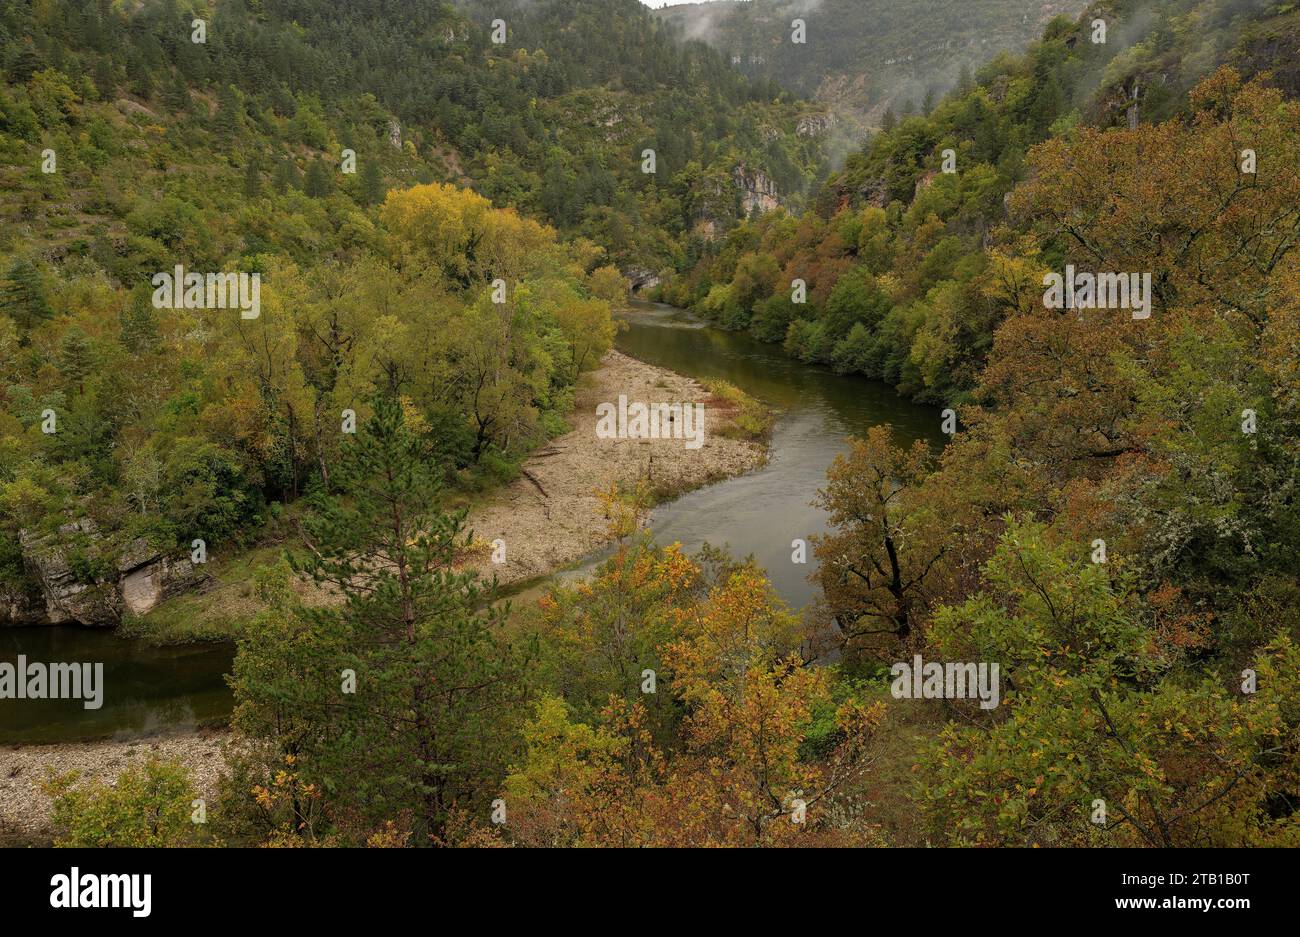 The Gorges du Tarn above Ste Enimie in autumn. France. Gorges du Tarn, Gòrjas de Tarn,   Tarn gorge, Causse Méjean, Causse de Sauveterre, Lozère, Stock Photo